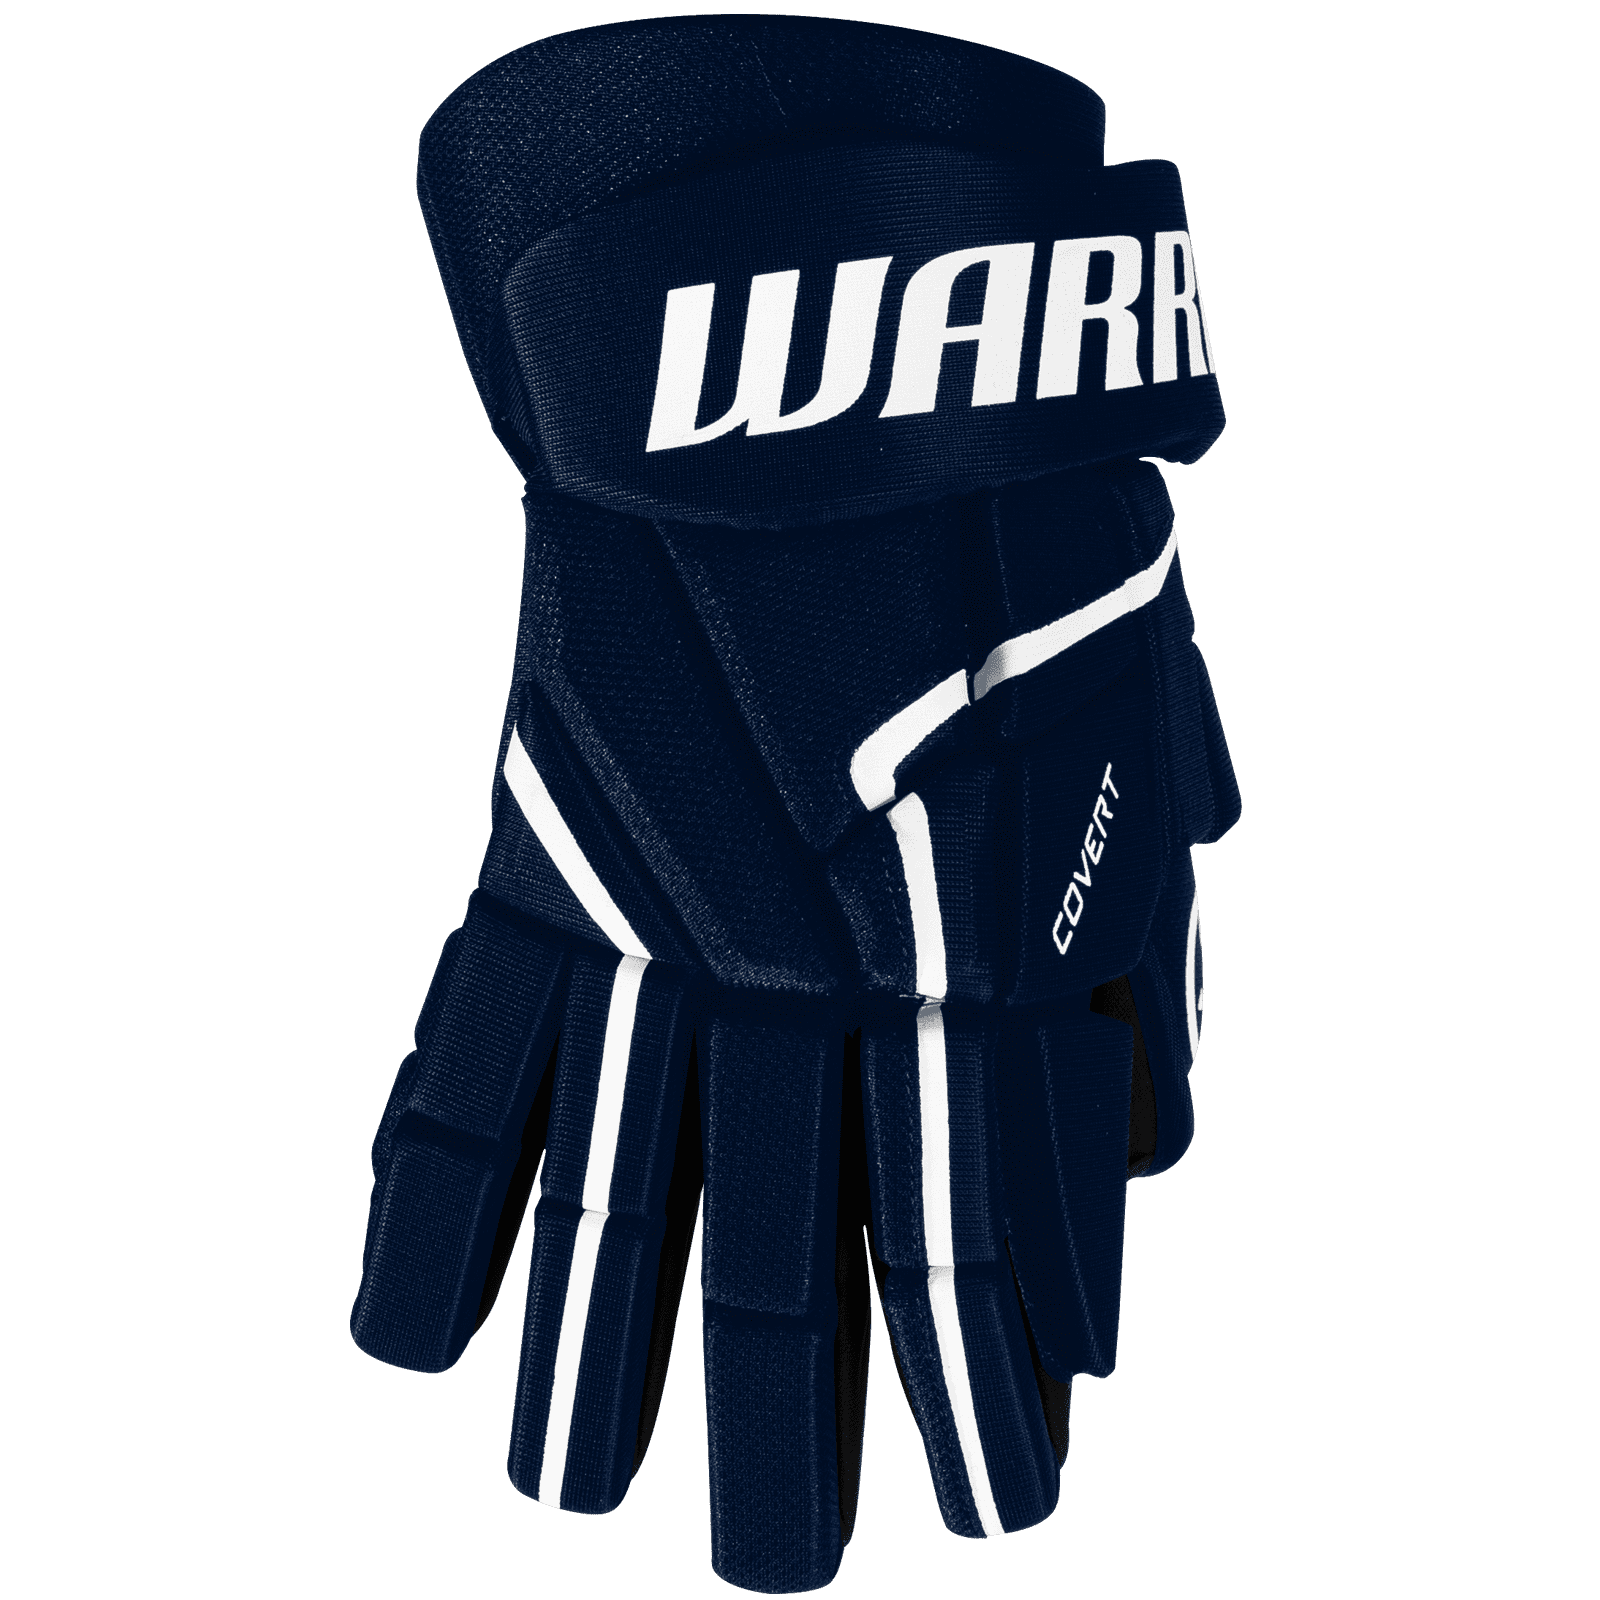 Handschuhe Warrior Covert QR5 40 JR 